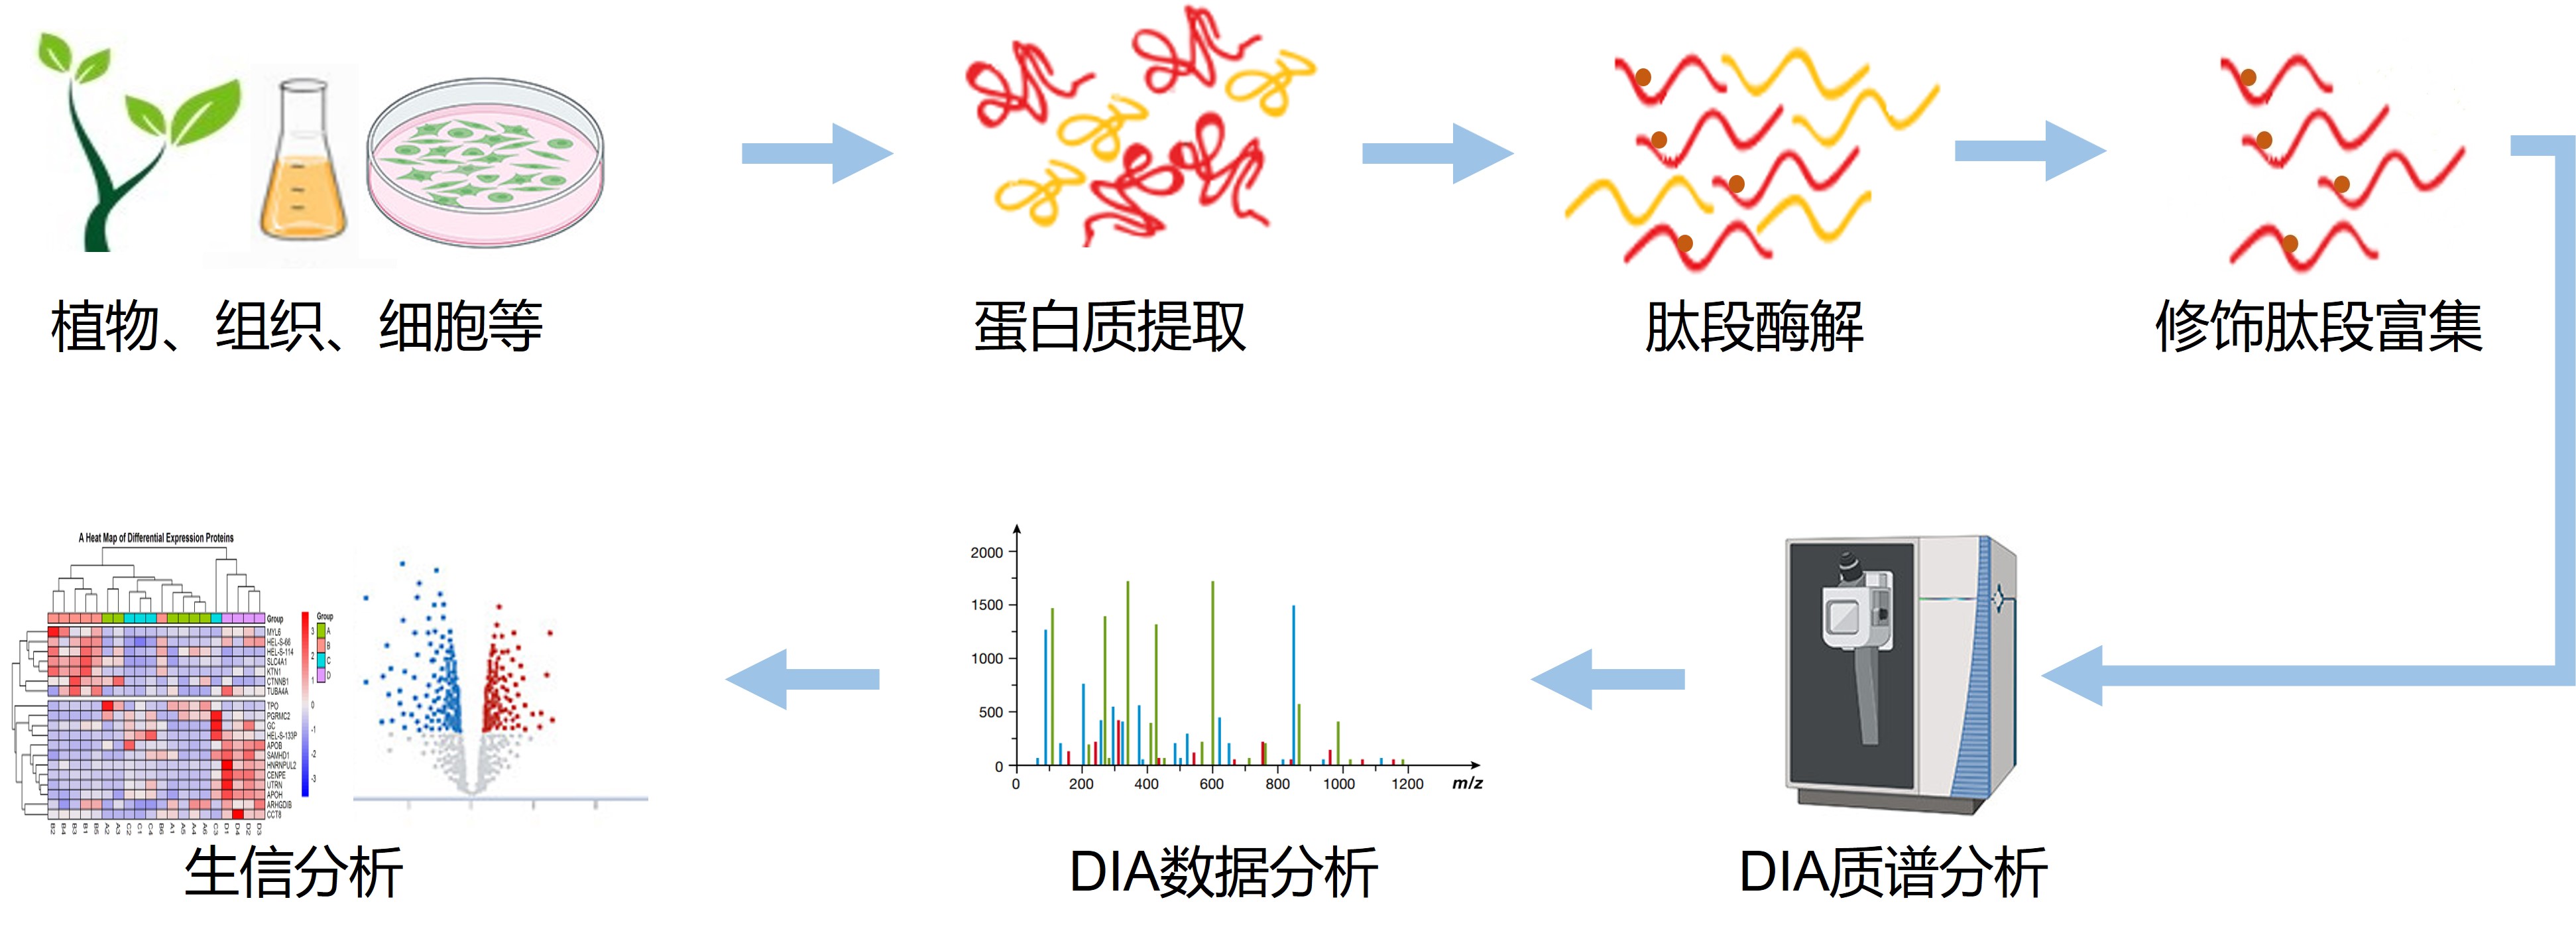 超高深度DIA乙酰化修饰蛋白质组